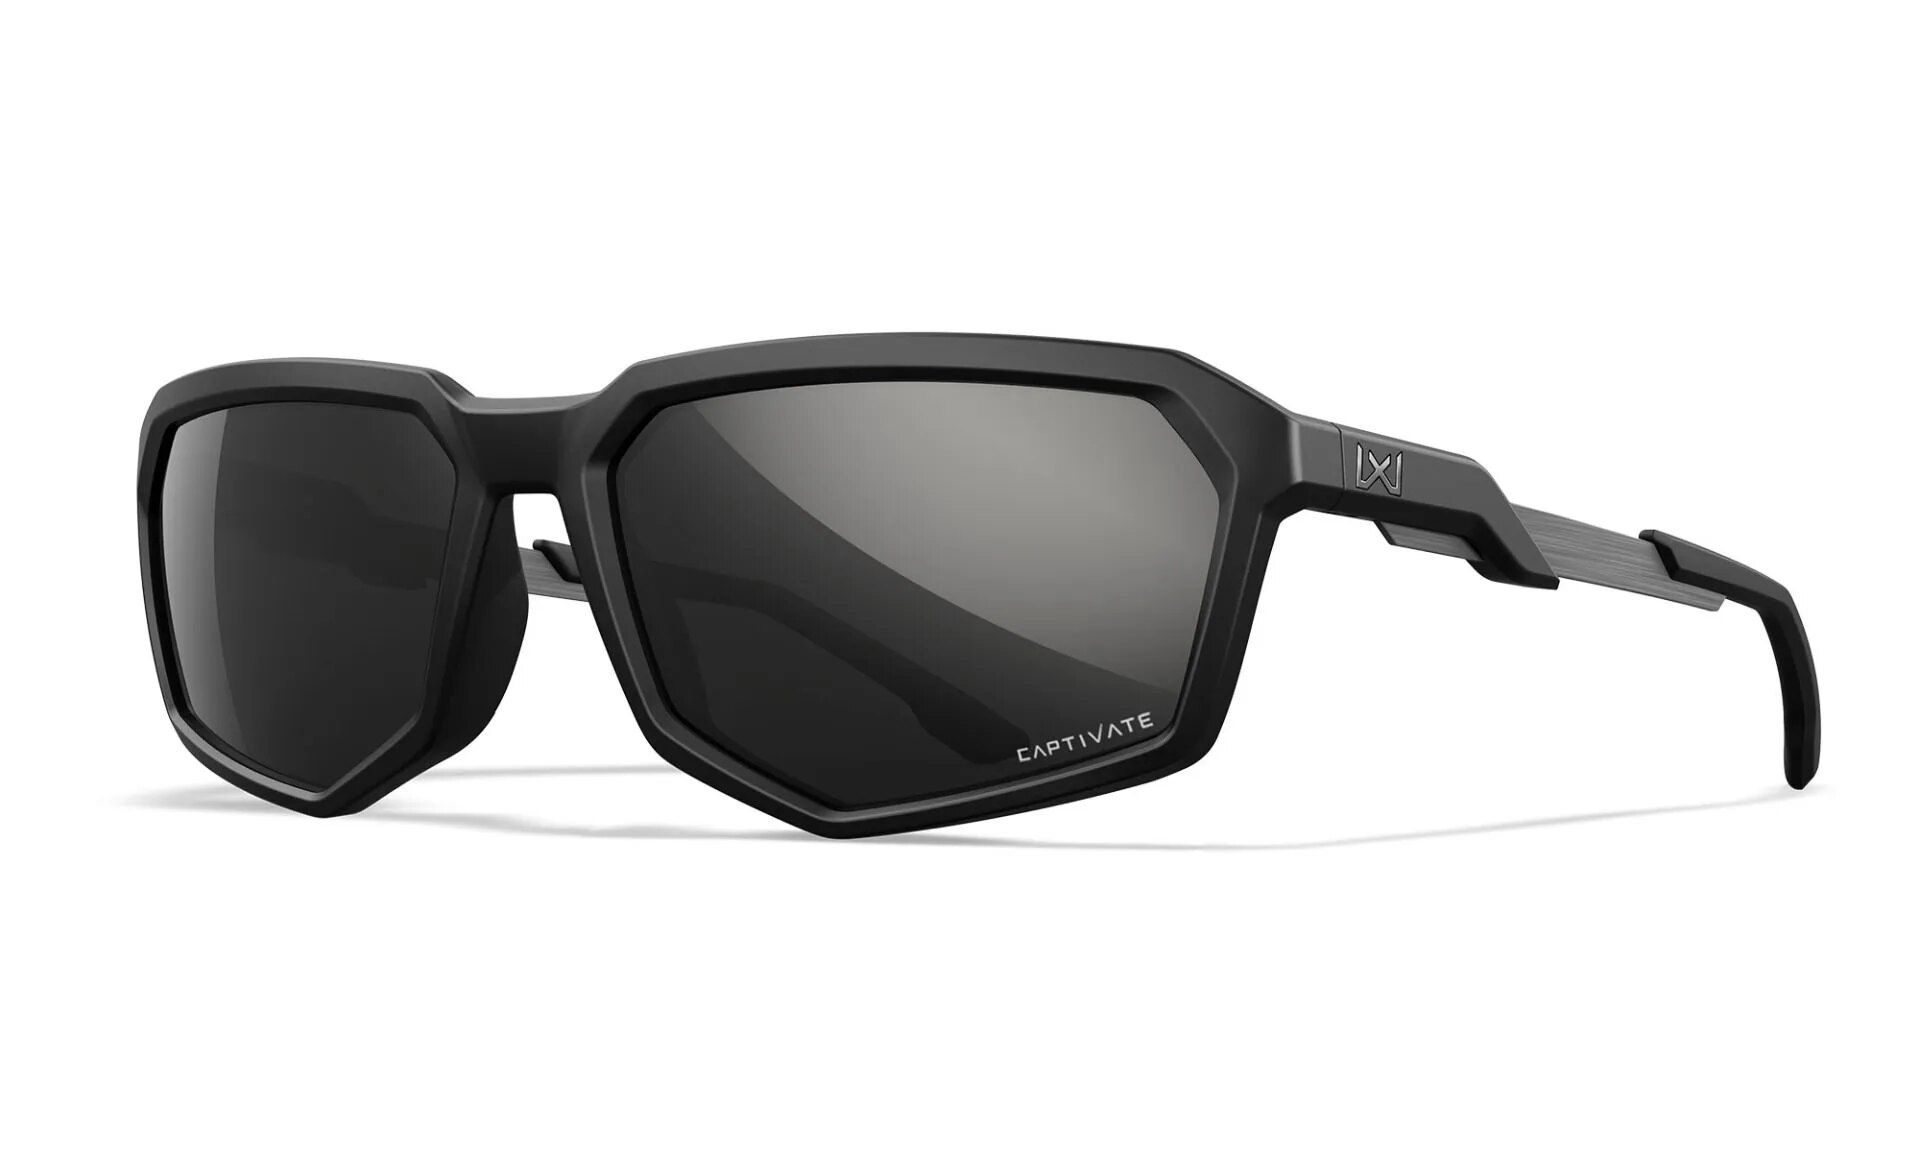 Slnečné okuliare Recon Captivate Wiley X® – Captivate™ čierne polarizované Mirror, Čierna (Farba: Čierna, Šošovky: Captivate™ čierne polarizované Mirr